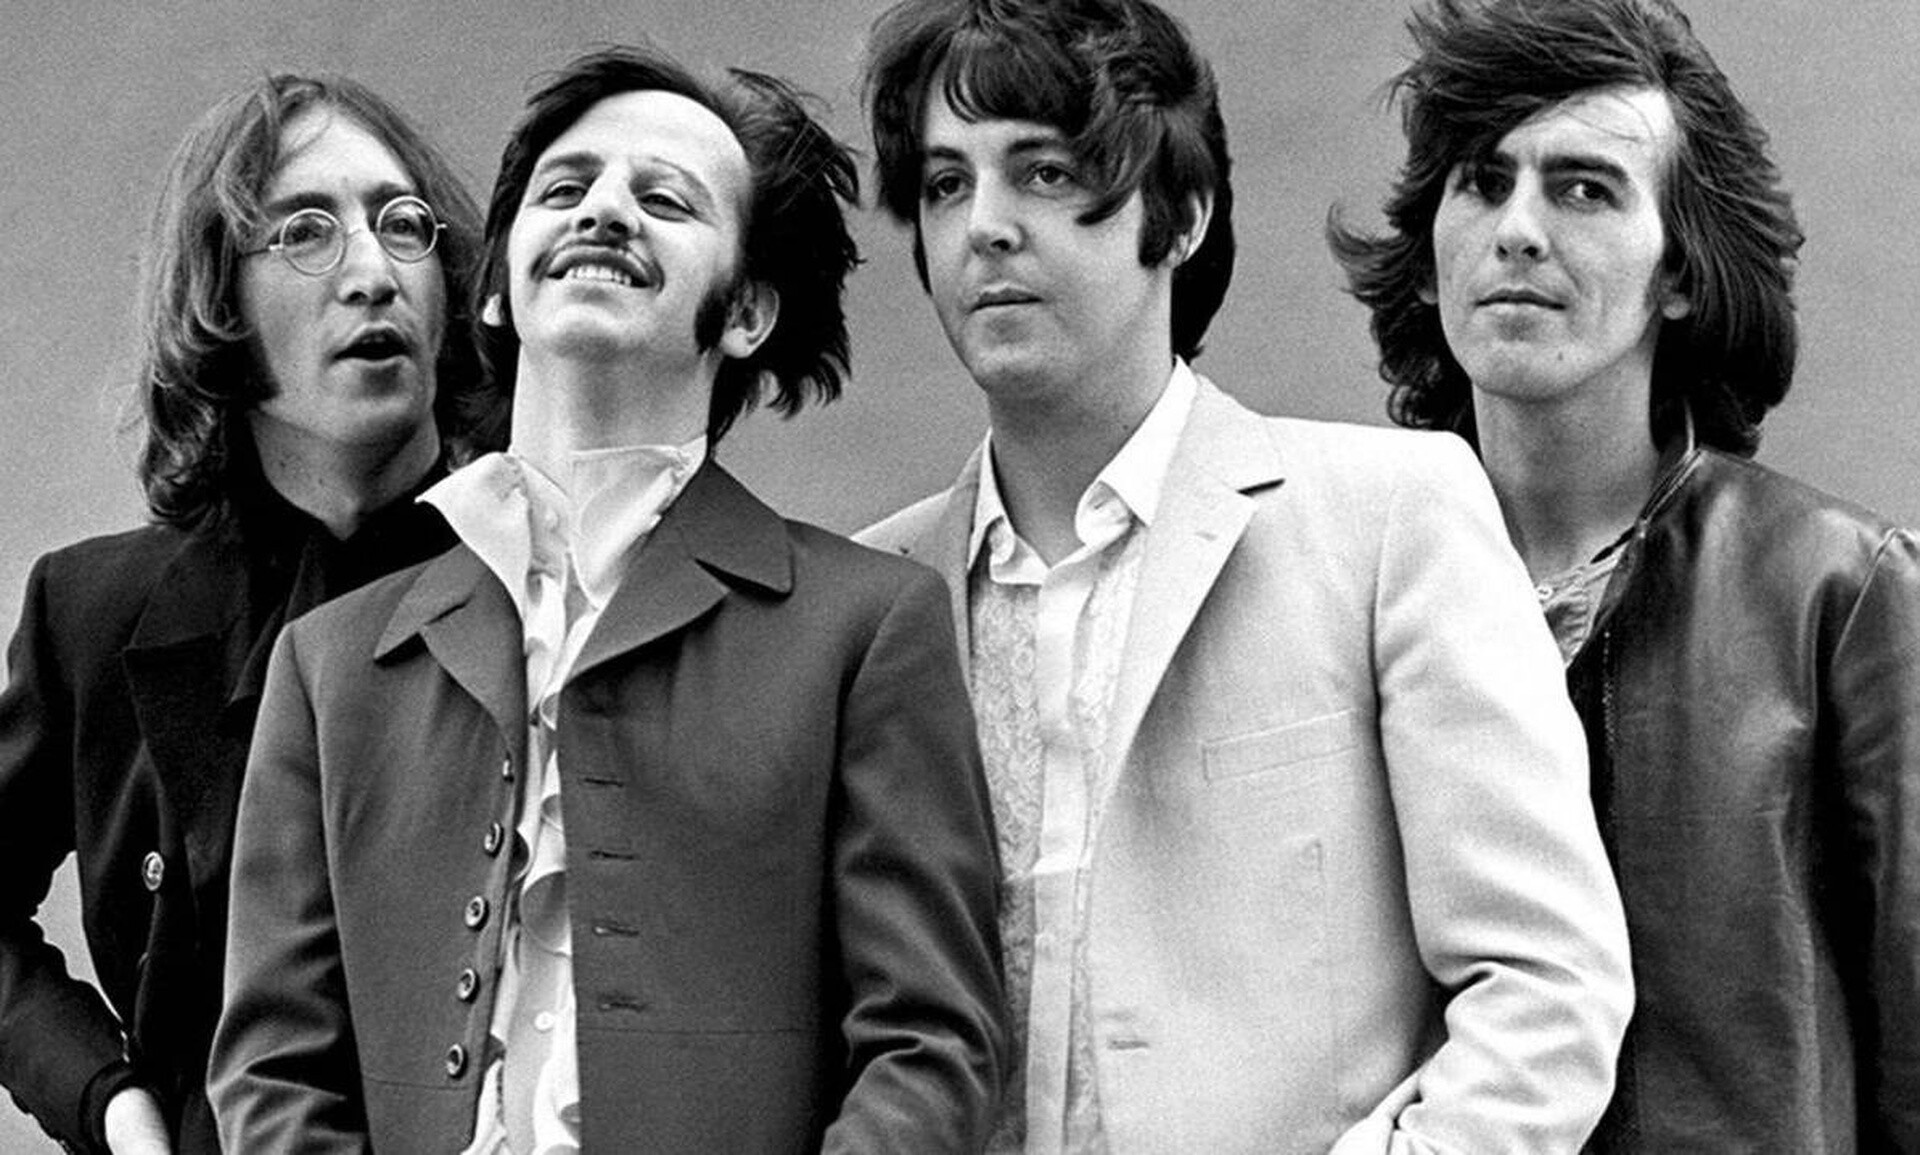 Οι γιοι των Beatles Πολ ΜακΚάρτνεϊ και Τζον Λένον έγραψαν τραγούδι